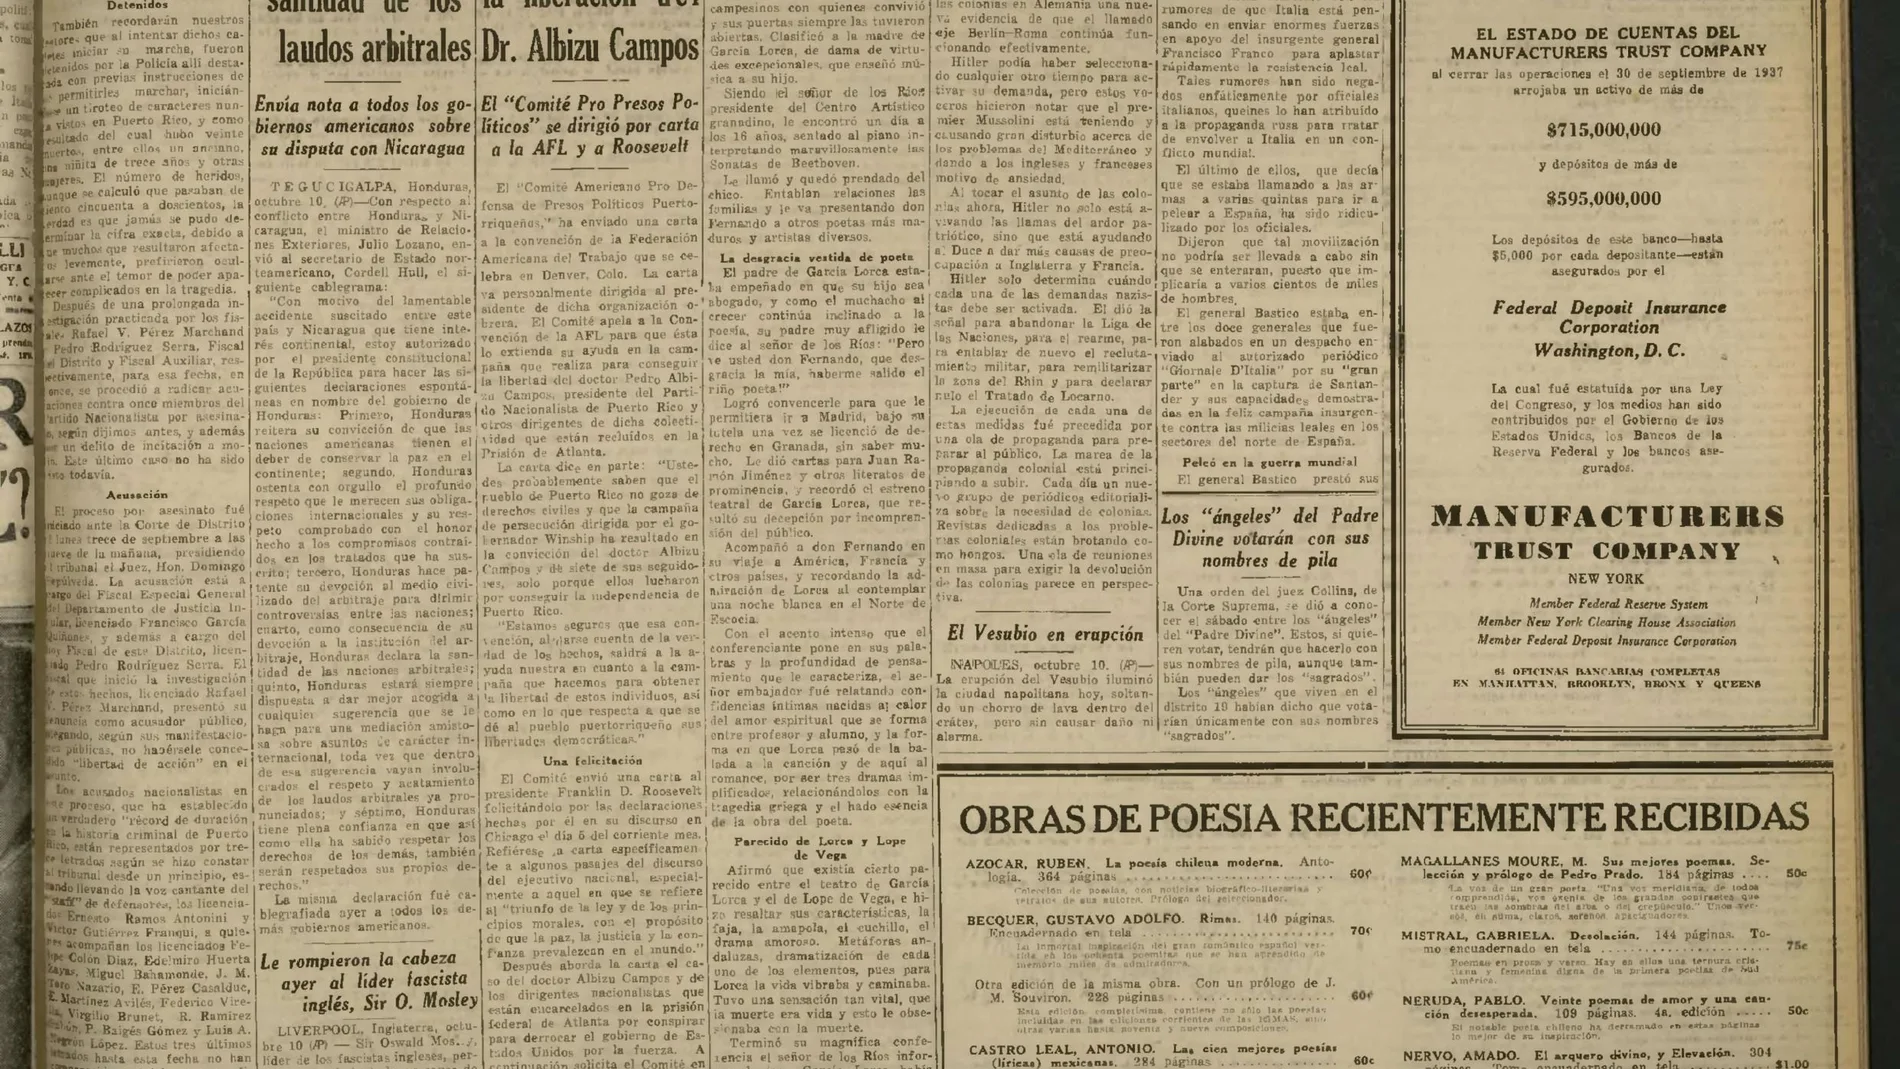 Imagen de la noticia aparecida en el diario "La Prensa" sobre una conferencia de Fernando de los Ríos en Nueva York en la que se refirió al fusilamiento de Lorca